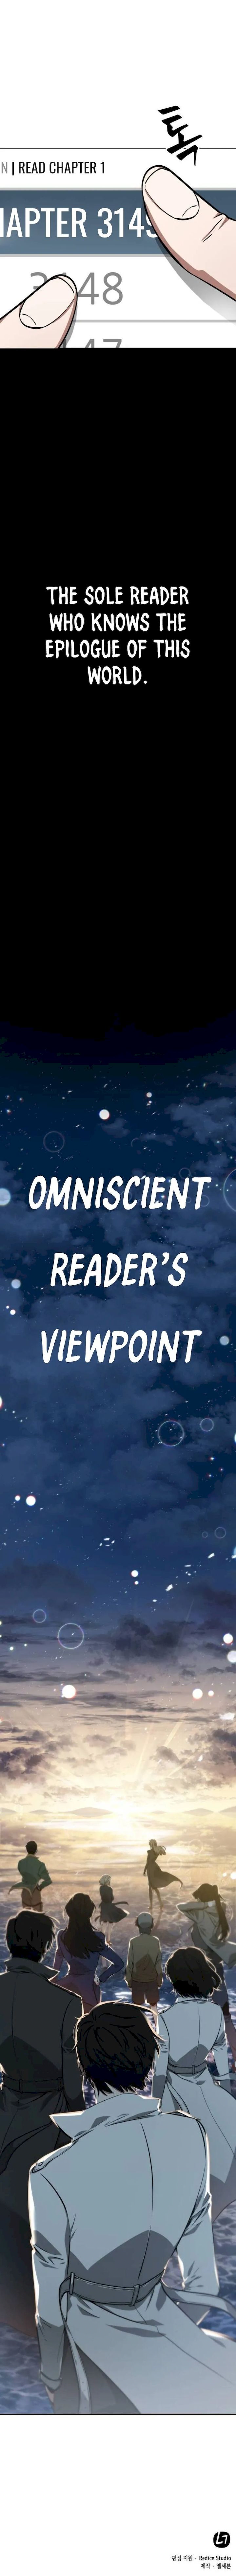 Omniscient Reader